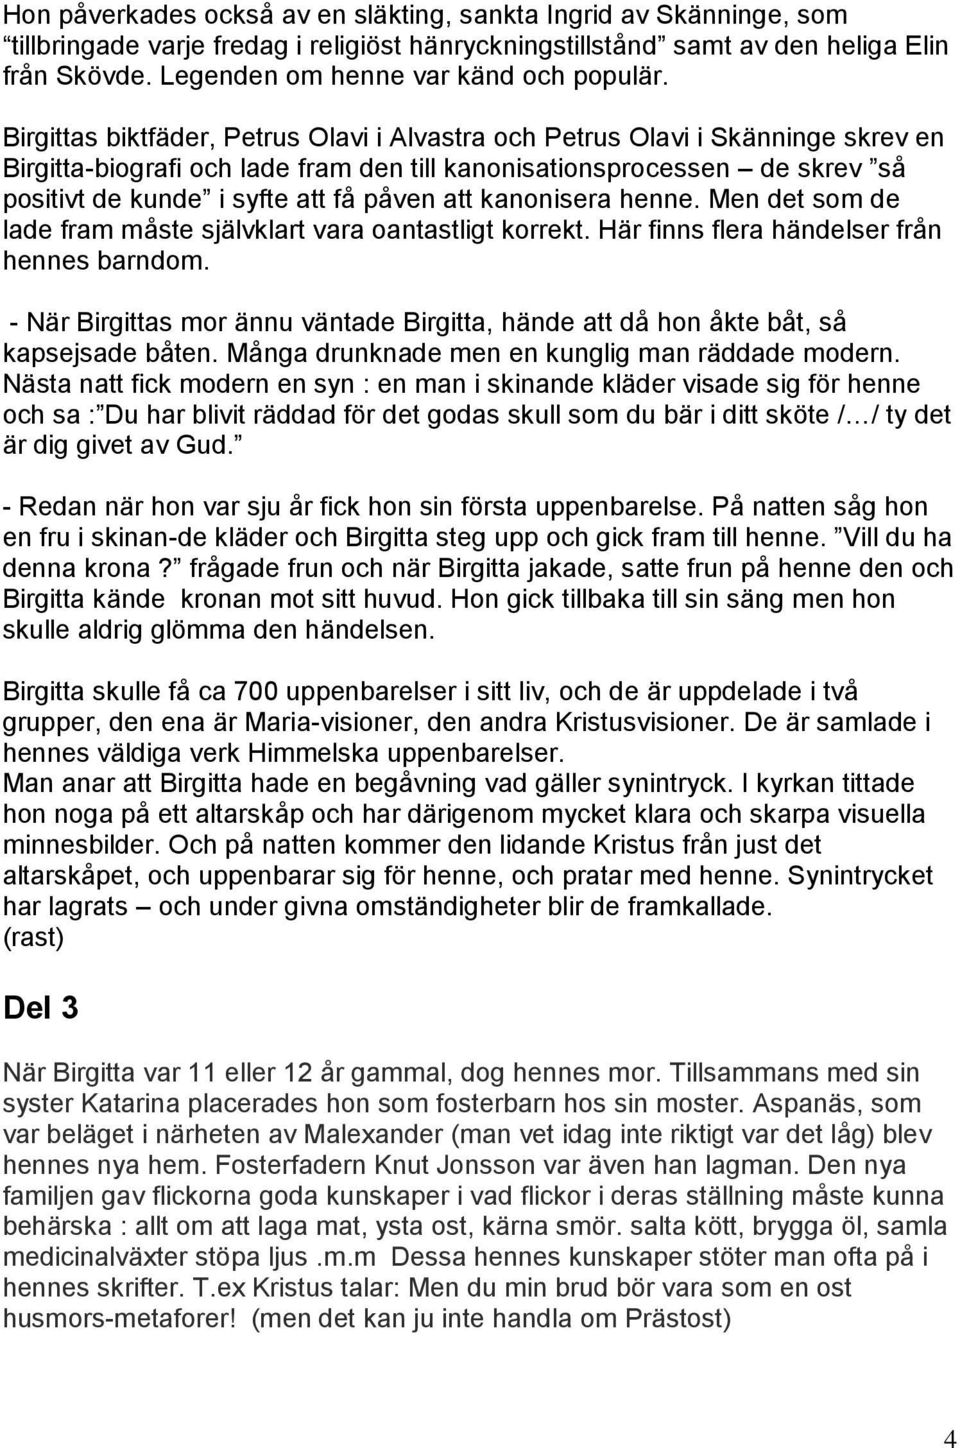 Birgittas biktfäder, Petrus Olavi i Alvastra och Petrus Olavi i Skänninge skrev en Birgitta-biografi och lade fram den till kanonisationsprocessen de skrev så positivt de kunde i syfte att få påven